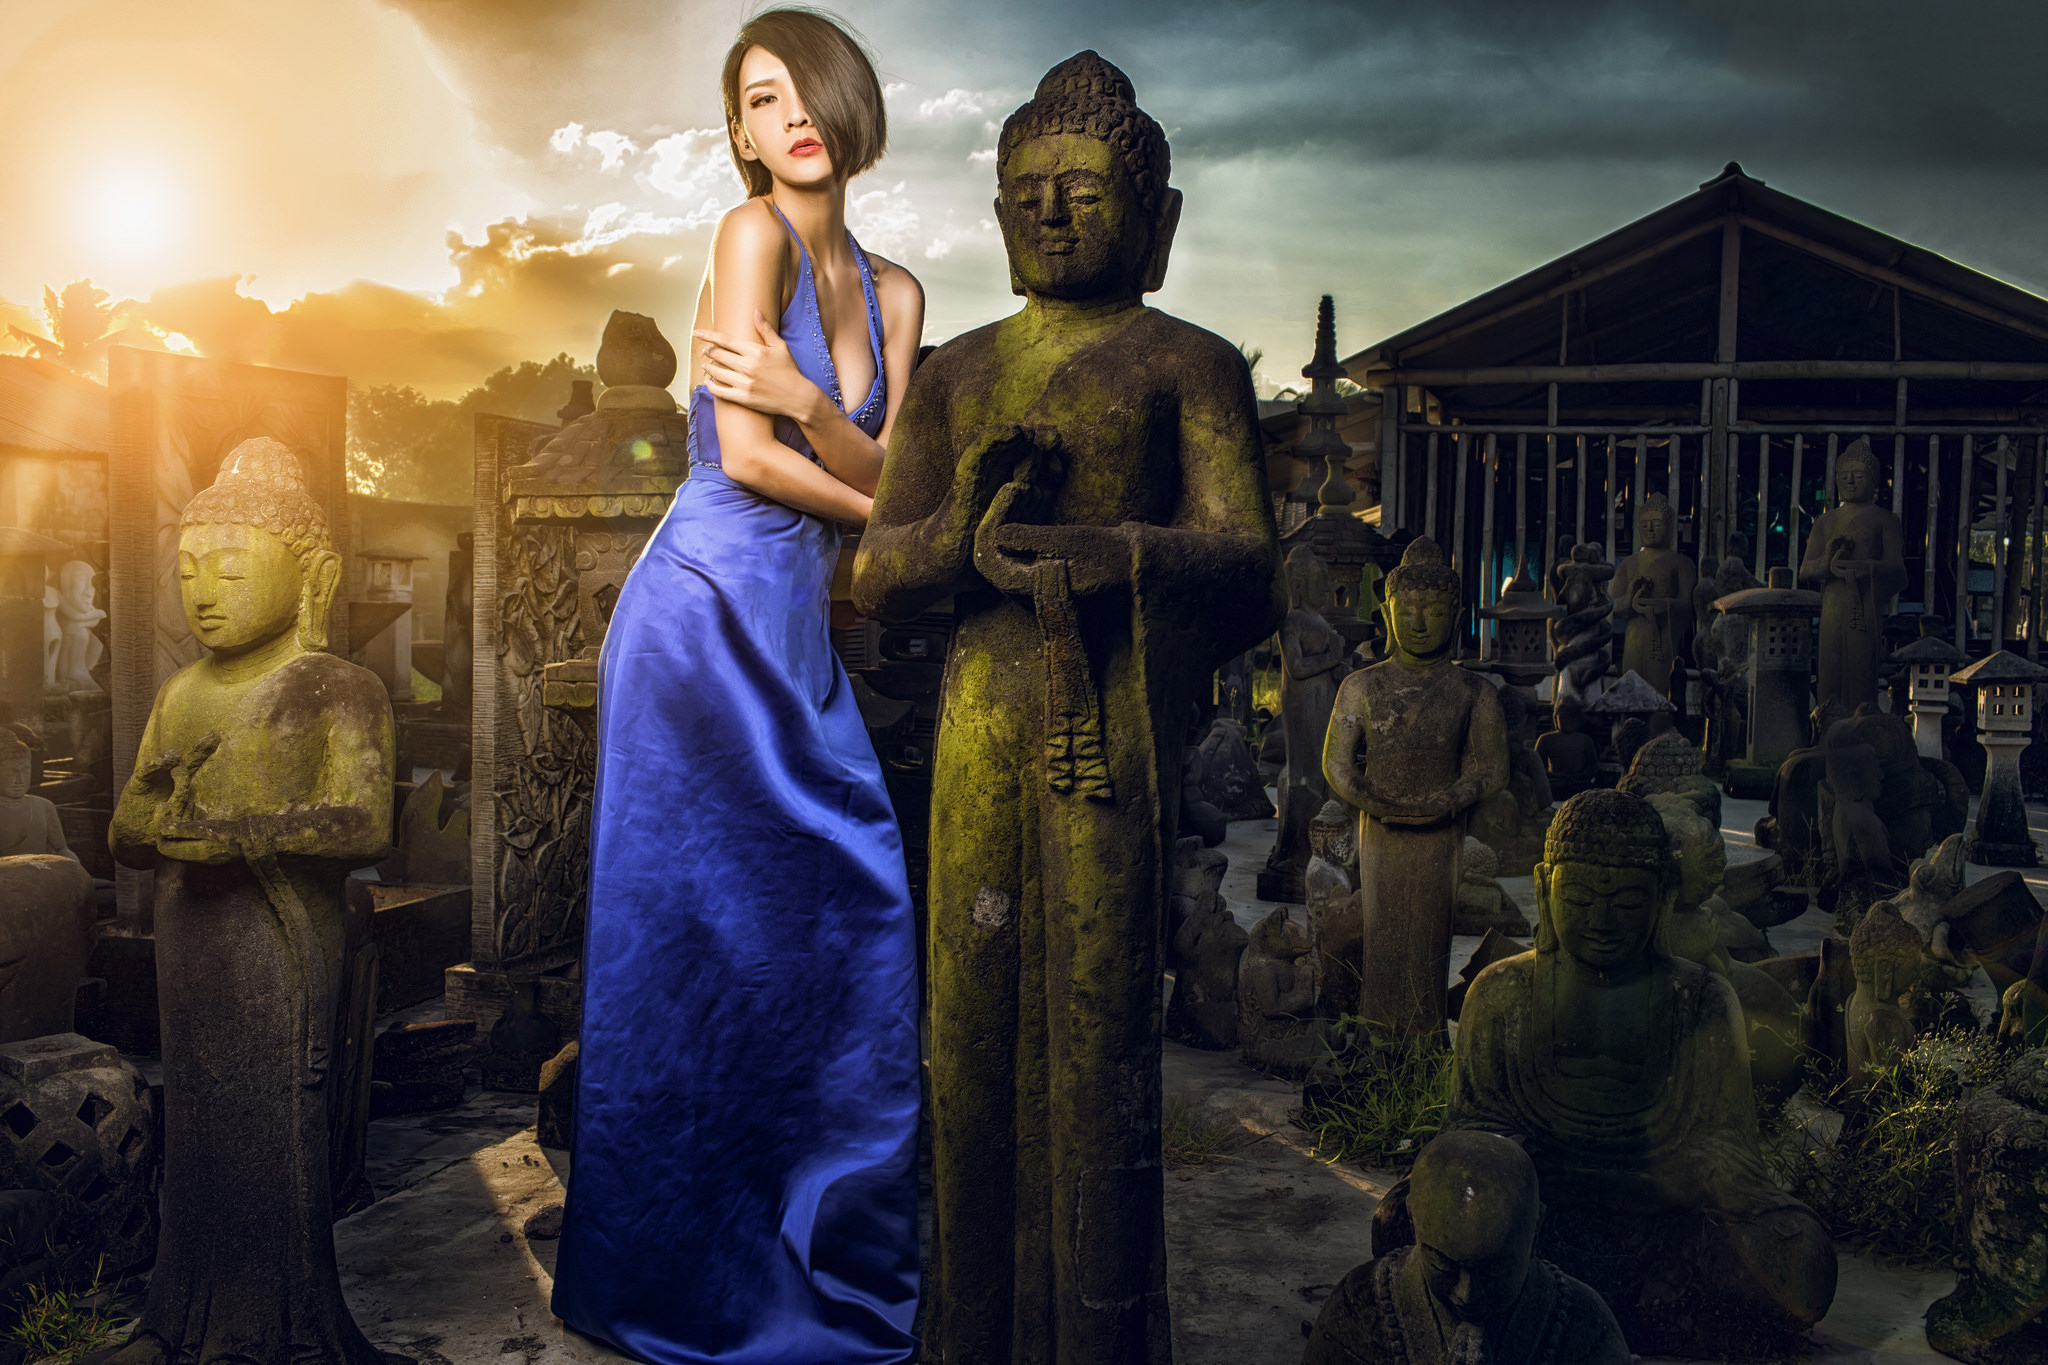 Descarga gratuita de fondo de pantalla para móvil de Morena, Buda, Estatua, Modelo, Mujeres, Asiática, Vestido Azul.